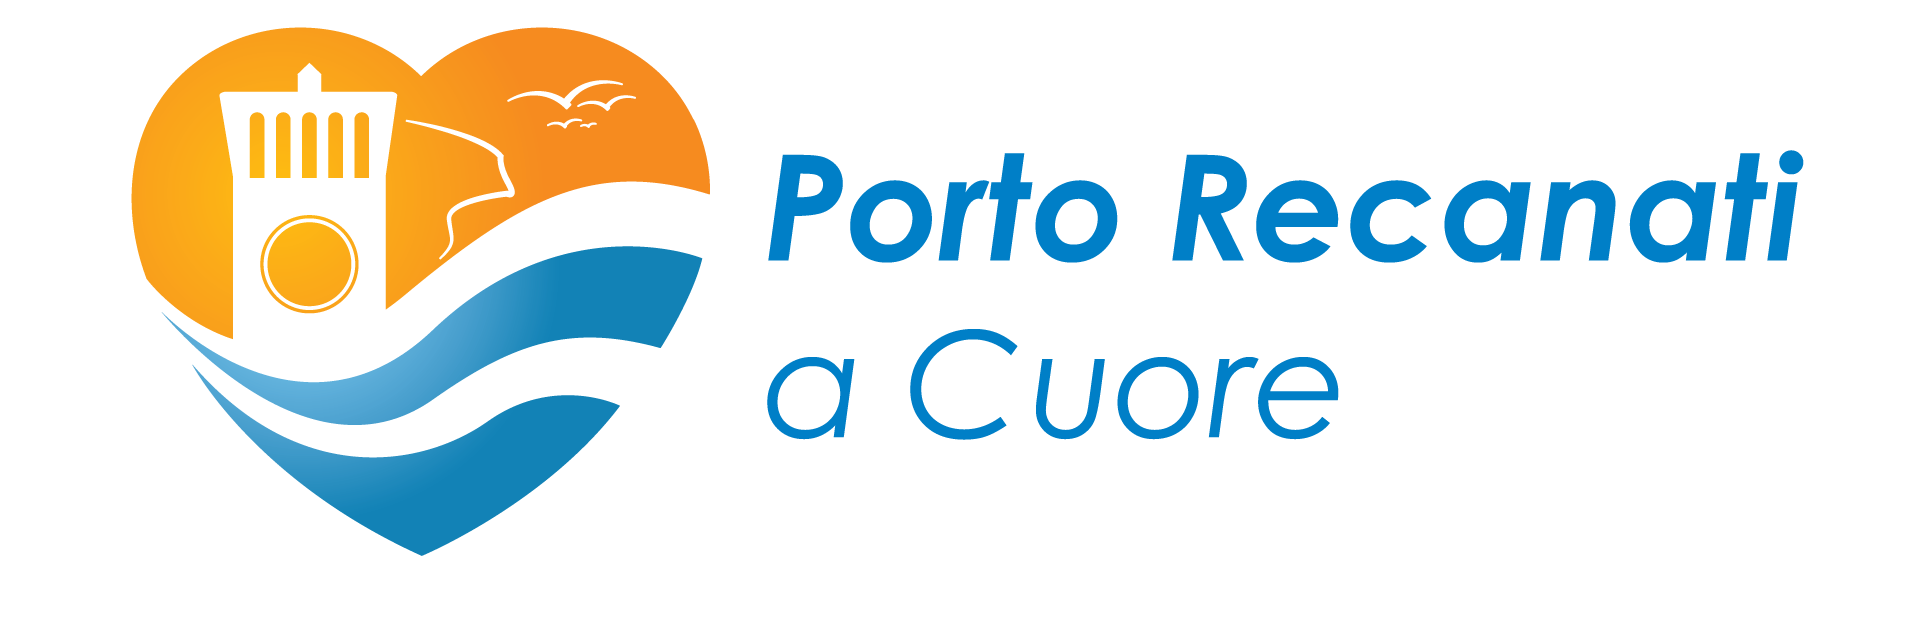 Porto Recanati a cuore